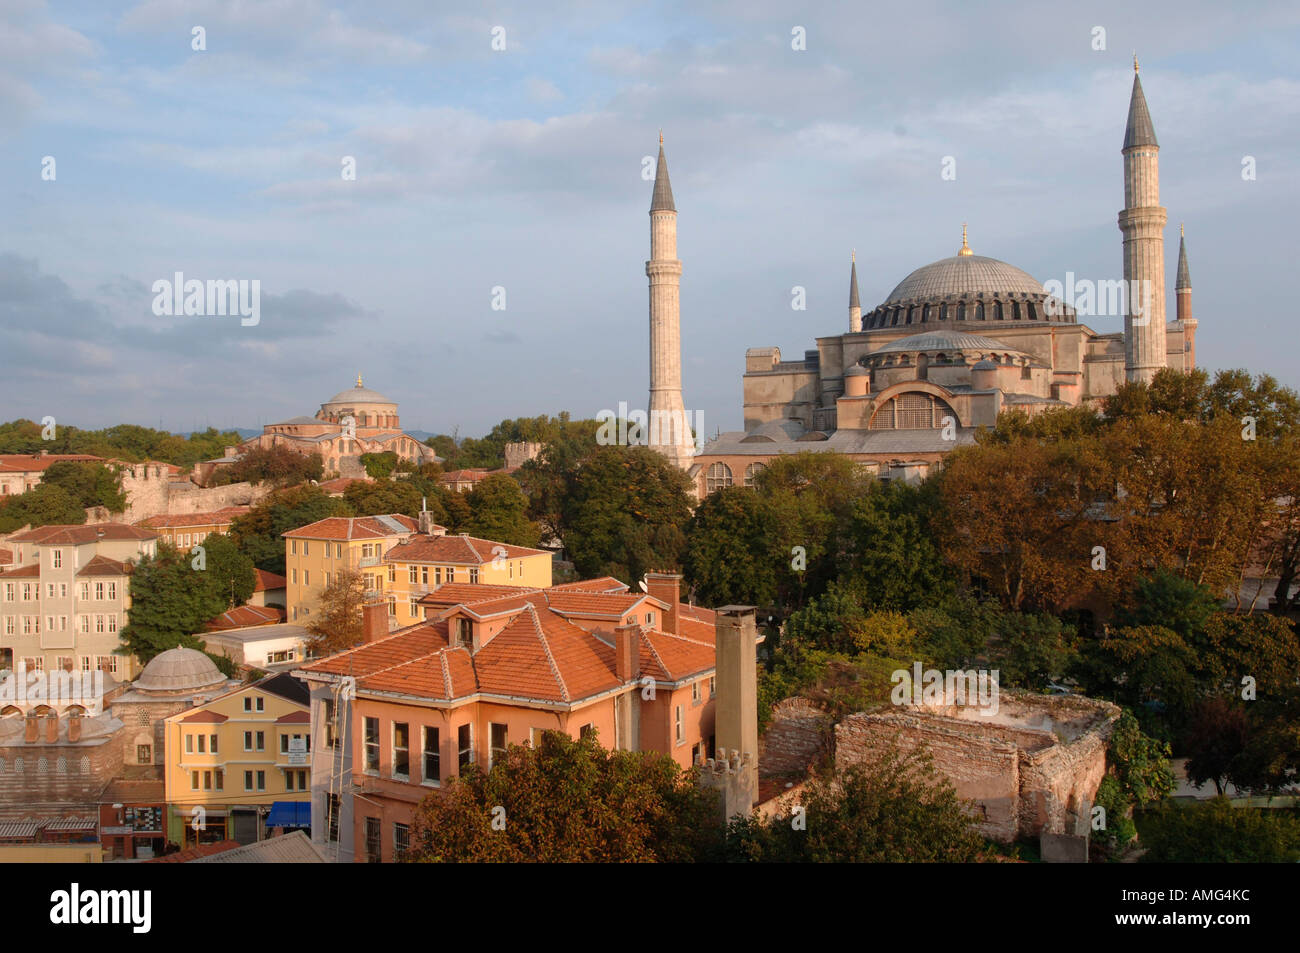 Ägypten, Istanbul, Altstadthäuser Vor der Hagia Sophia, verbindet Die Kuppel der Irenenkirche Stockfoto